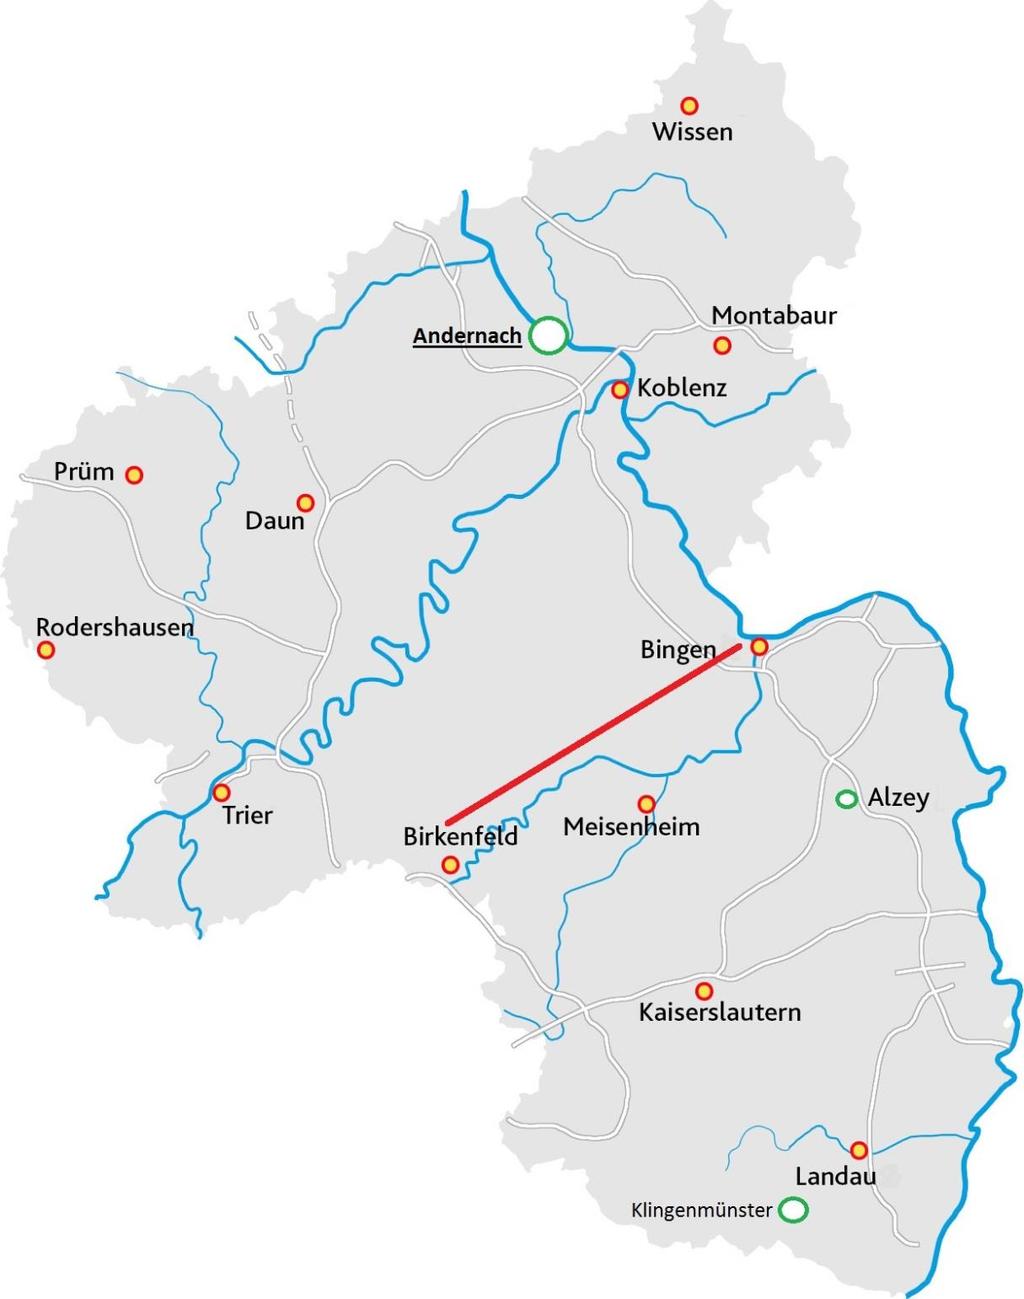 Einzugsgebiet Rheinland-Pfalz hat 3 Forensik-Standorte mit jeweils angeschlossener forensischer Ambulanz: